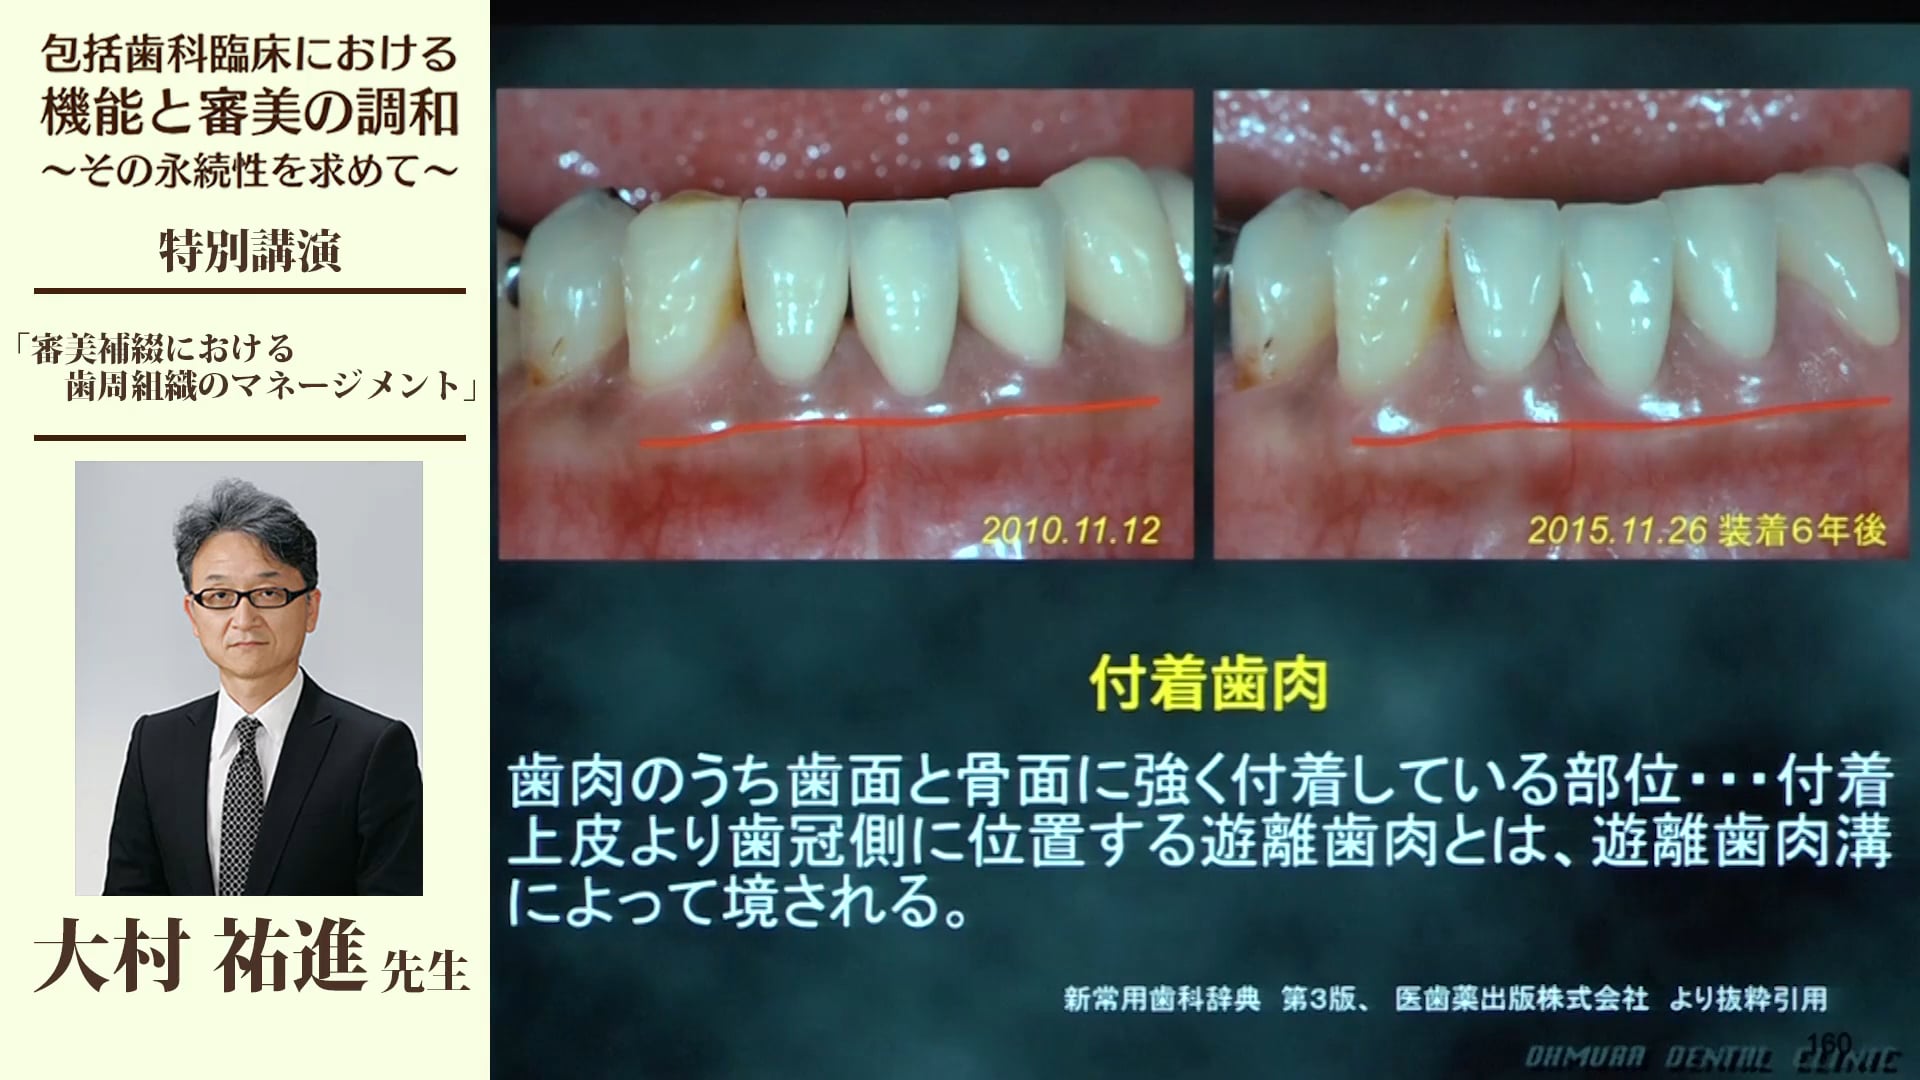 審美補綴における歯周組織のマネージメント #3